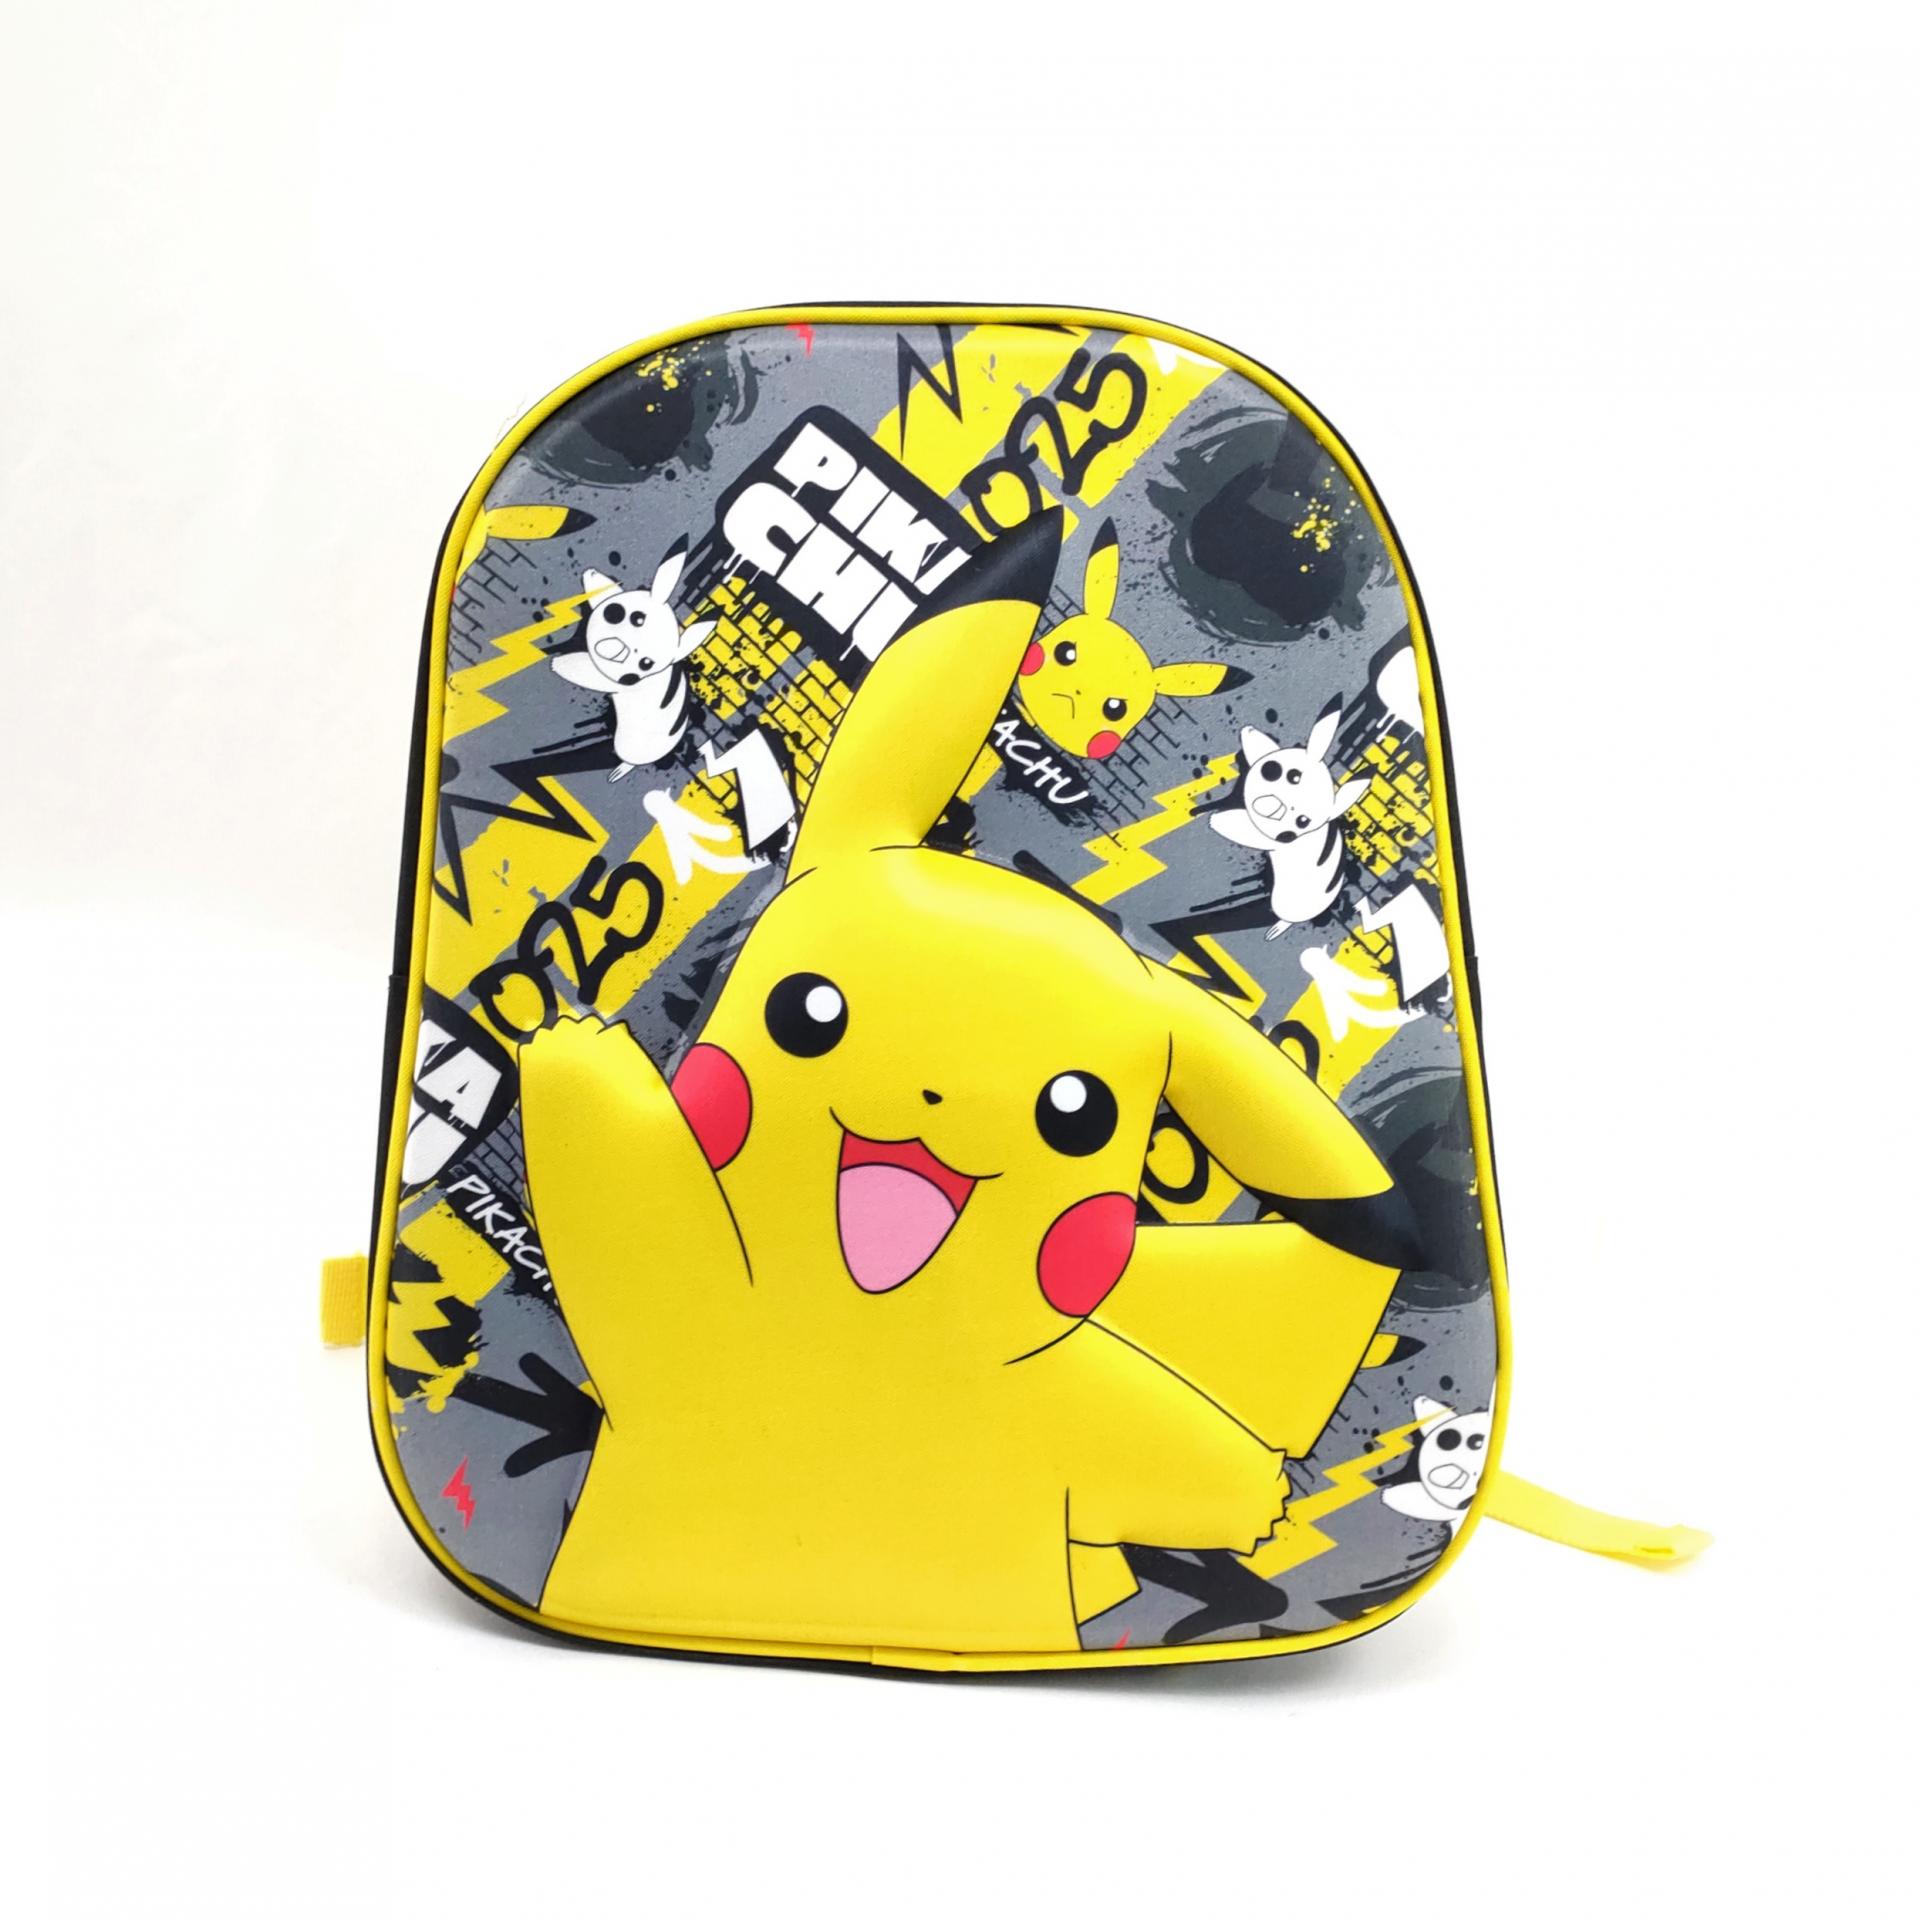 Mochila Pokemon - Pikachu  Ideas para regalos originales